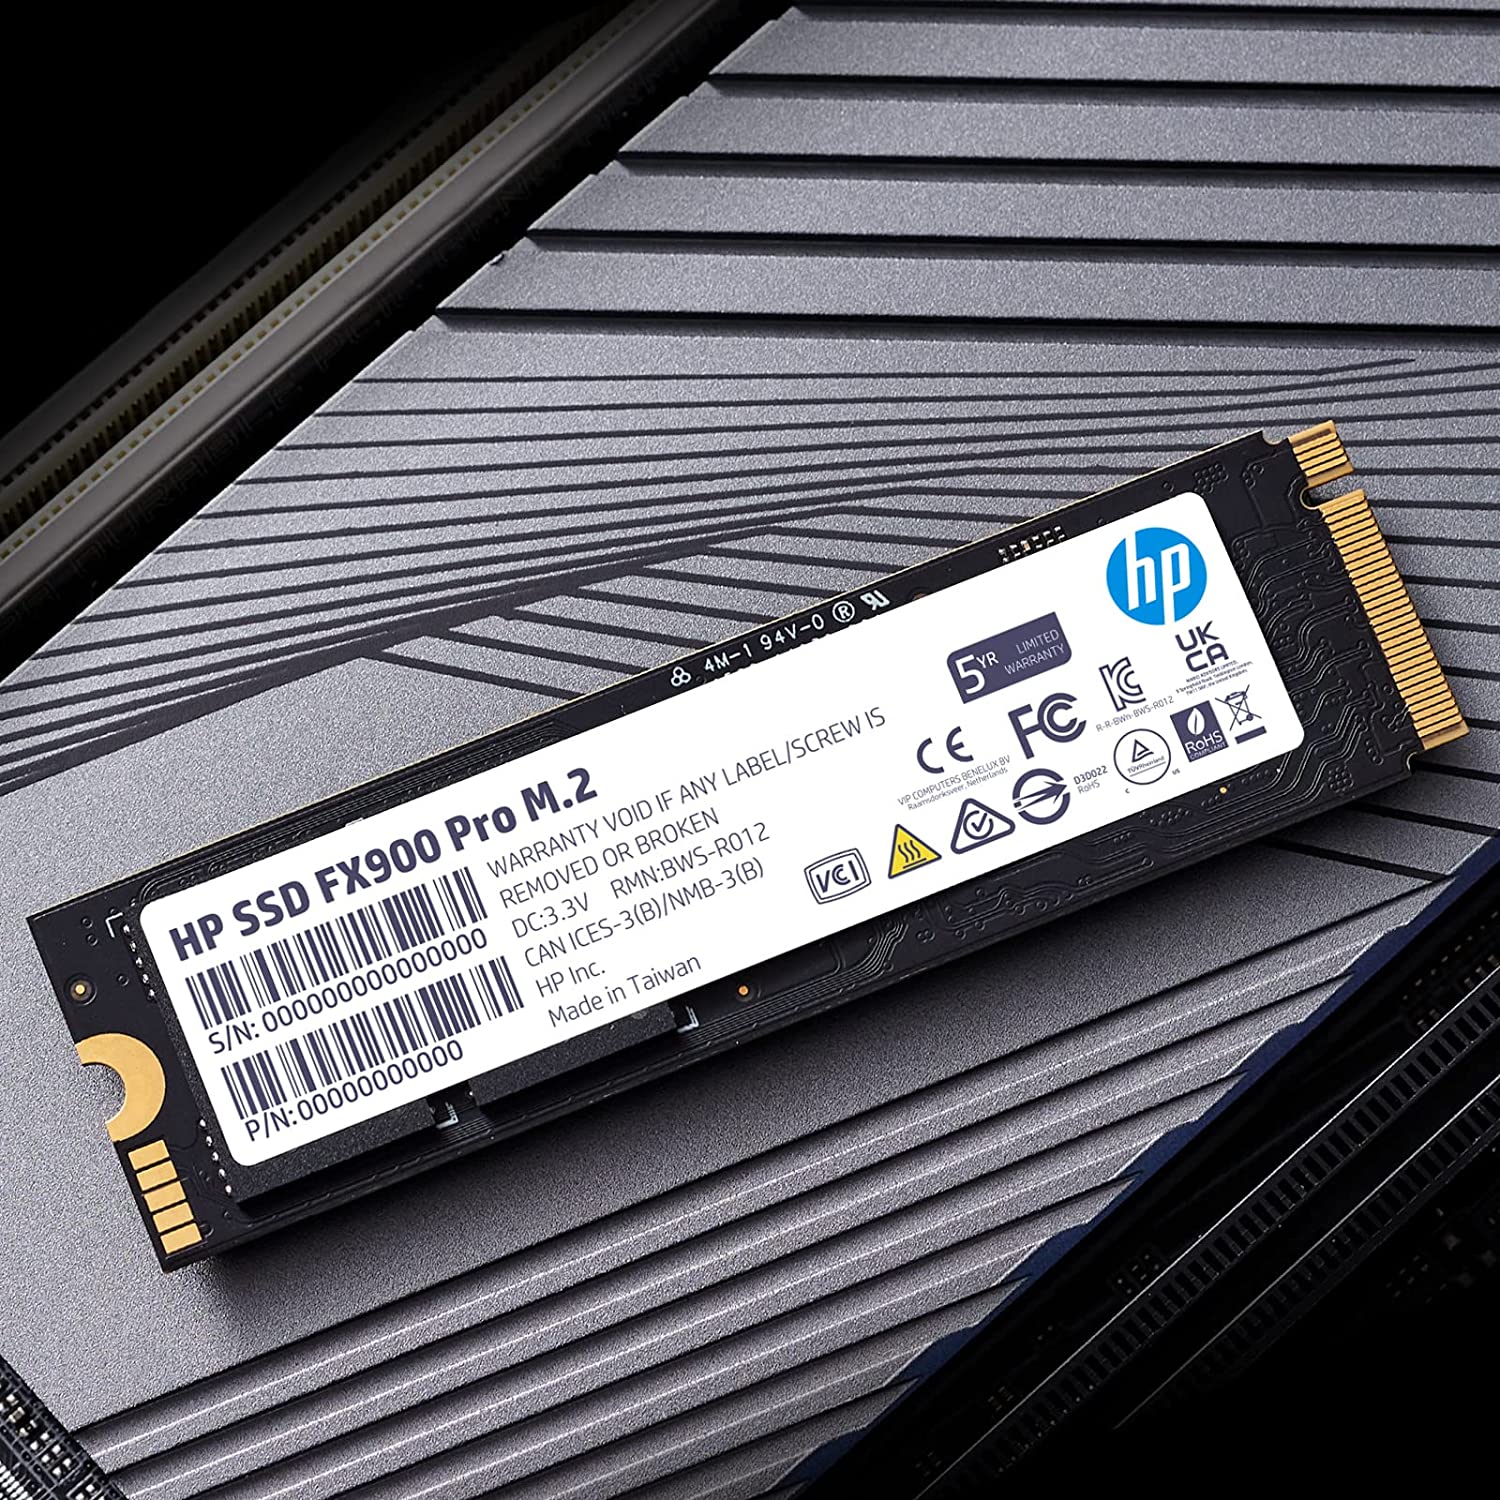 HP FX900 PRO M.2 PCI-E4.0 GEN 4 NVMe SSD 512GB 固態硬碟 (7000MB/s)